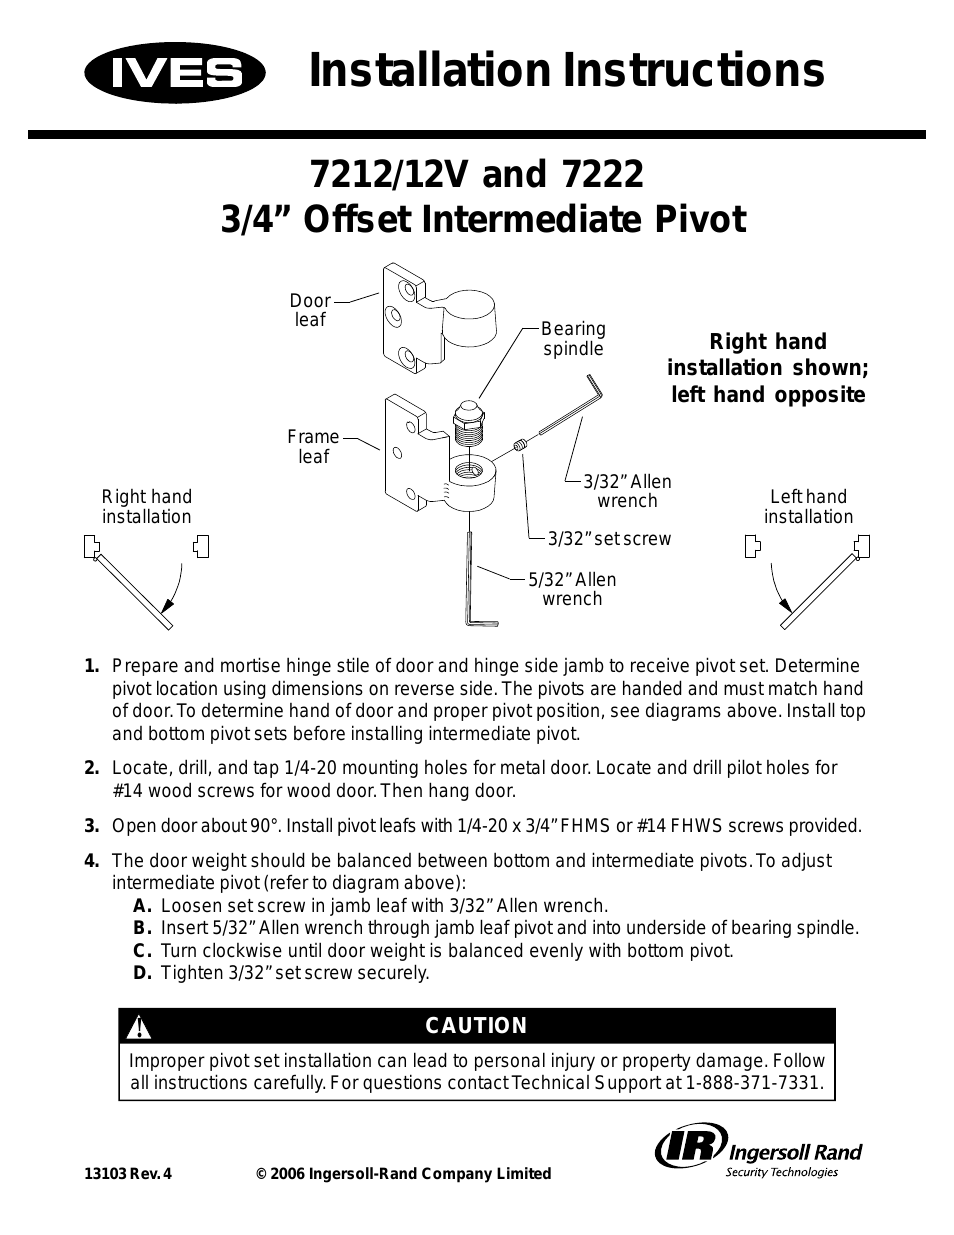 Offset Intermediate Pivot 7212/12V